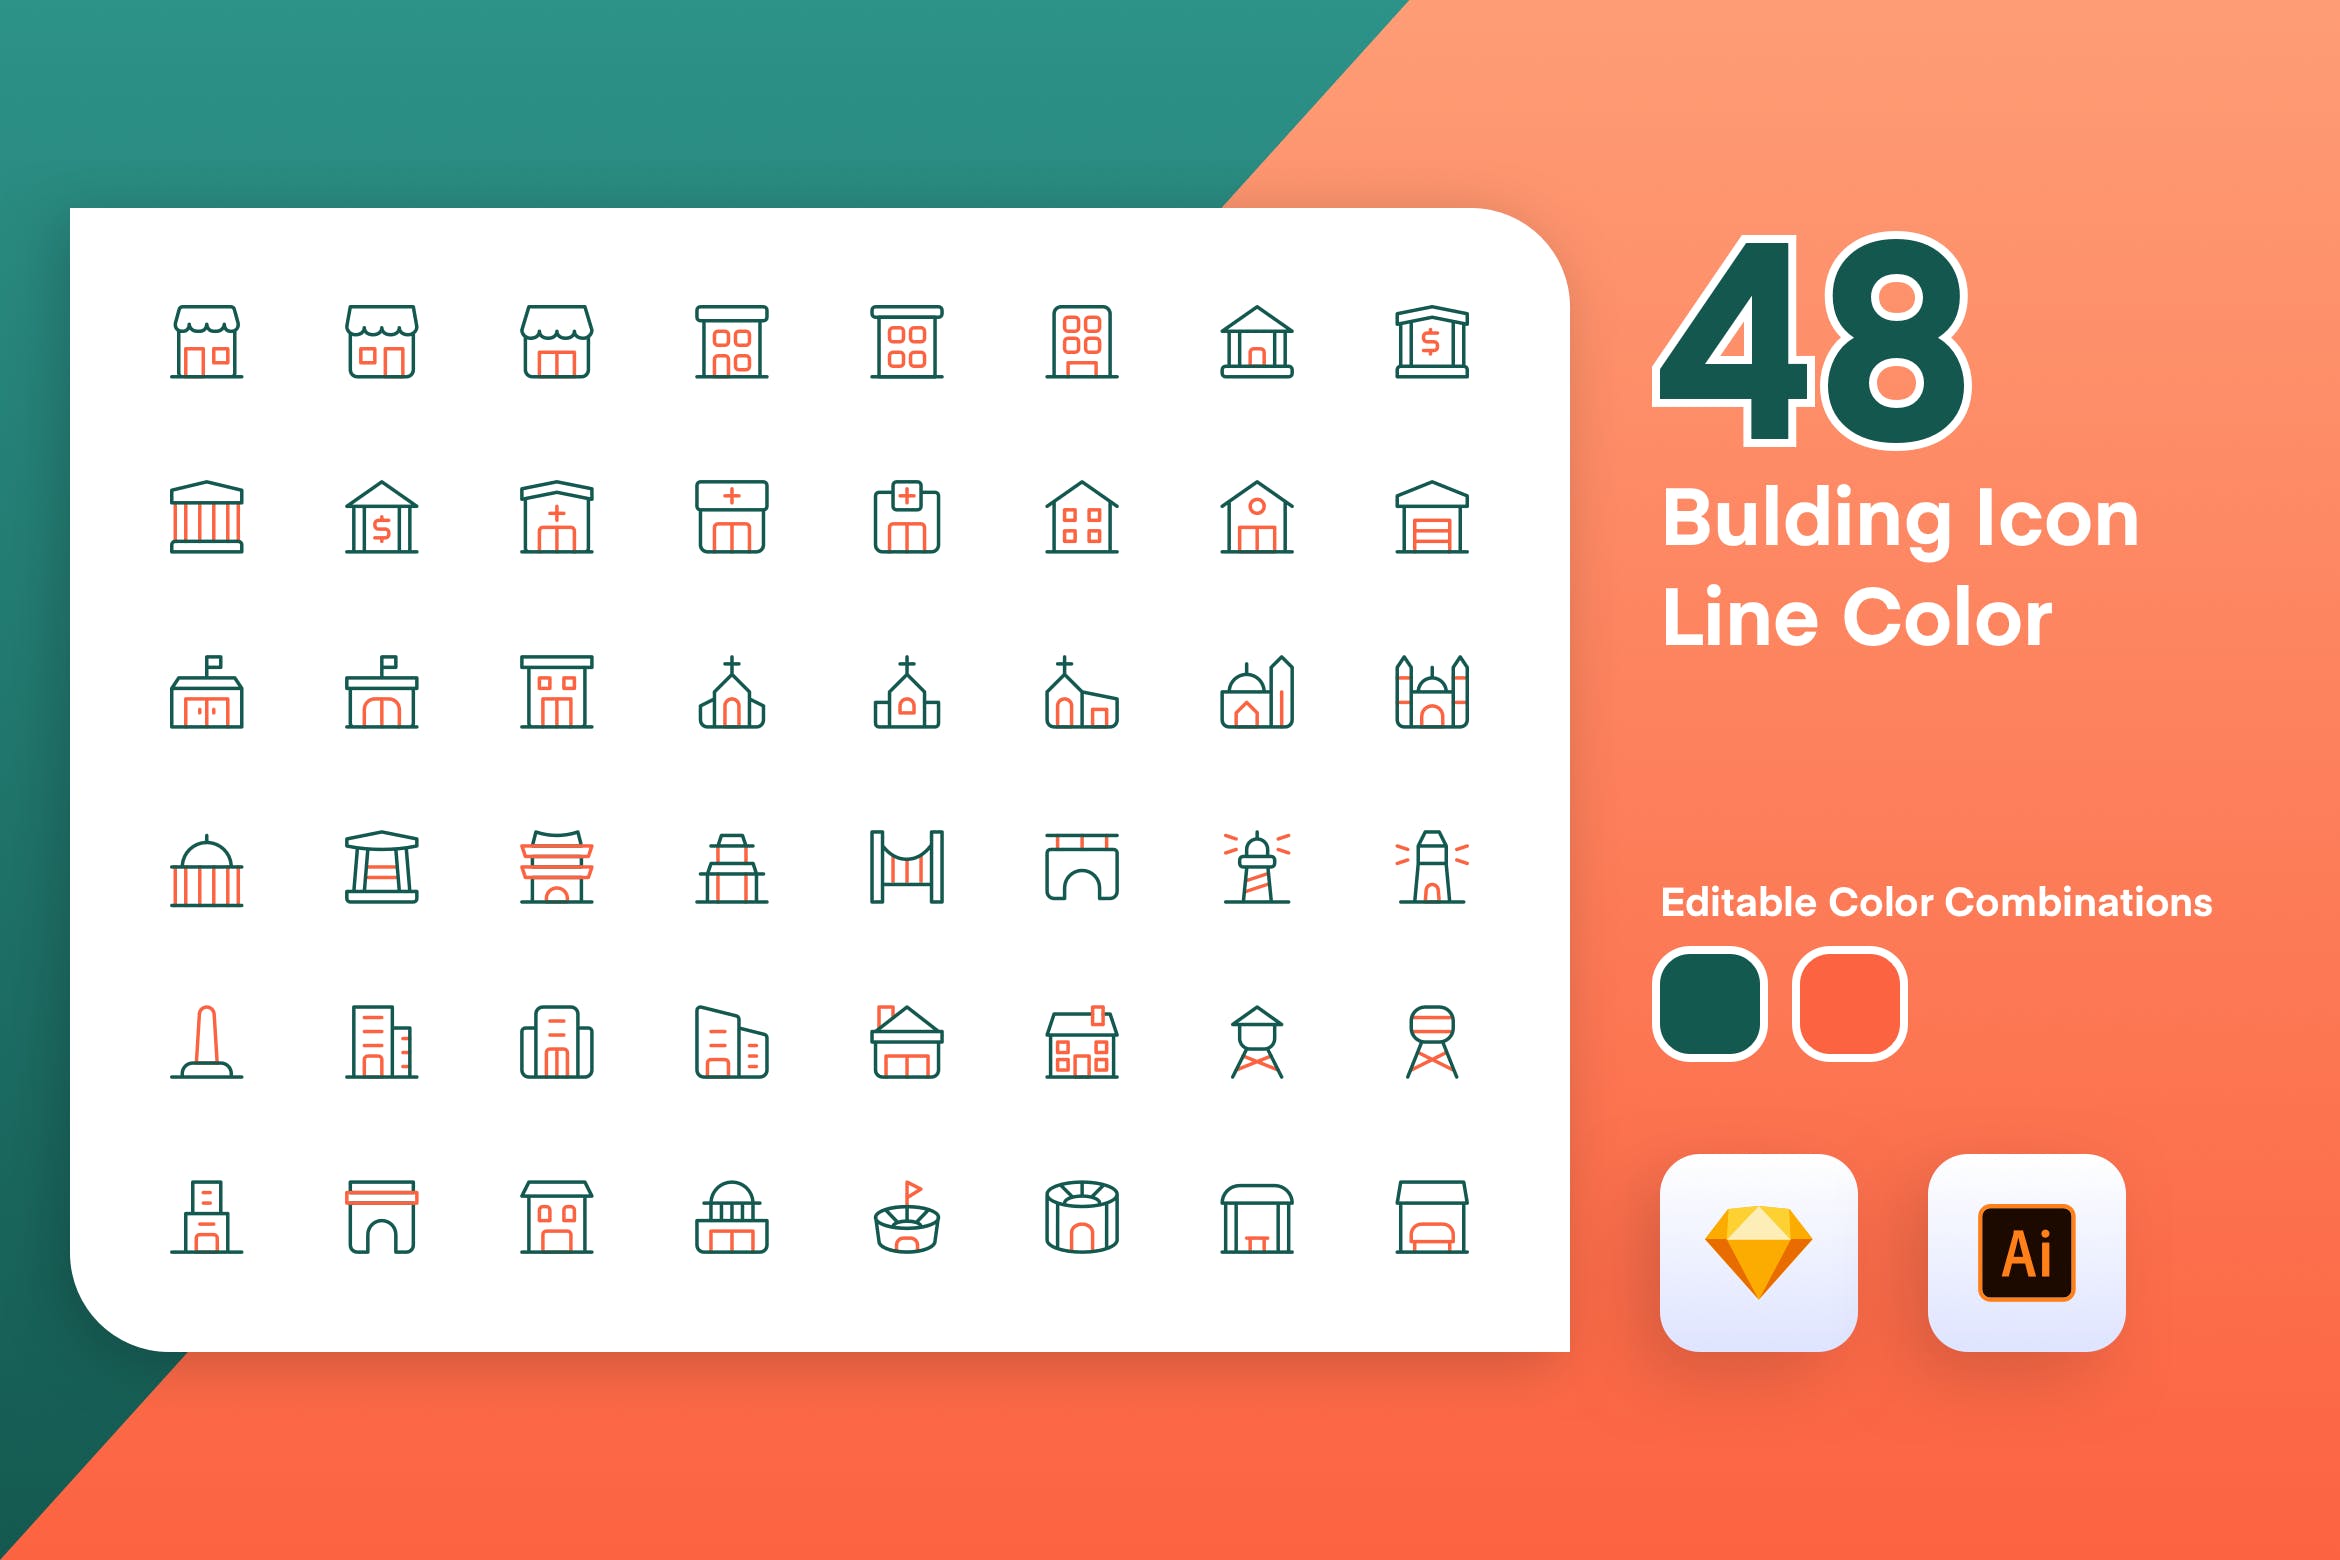 48枚建筑主题彩色矢量线性第一素材精选图标素材 Building Icon Line Color插图